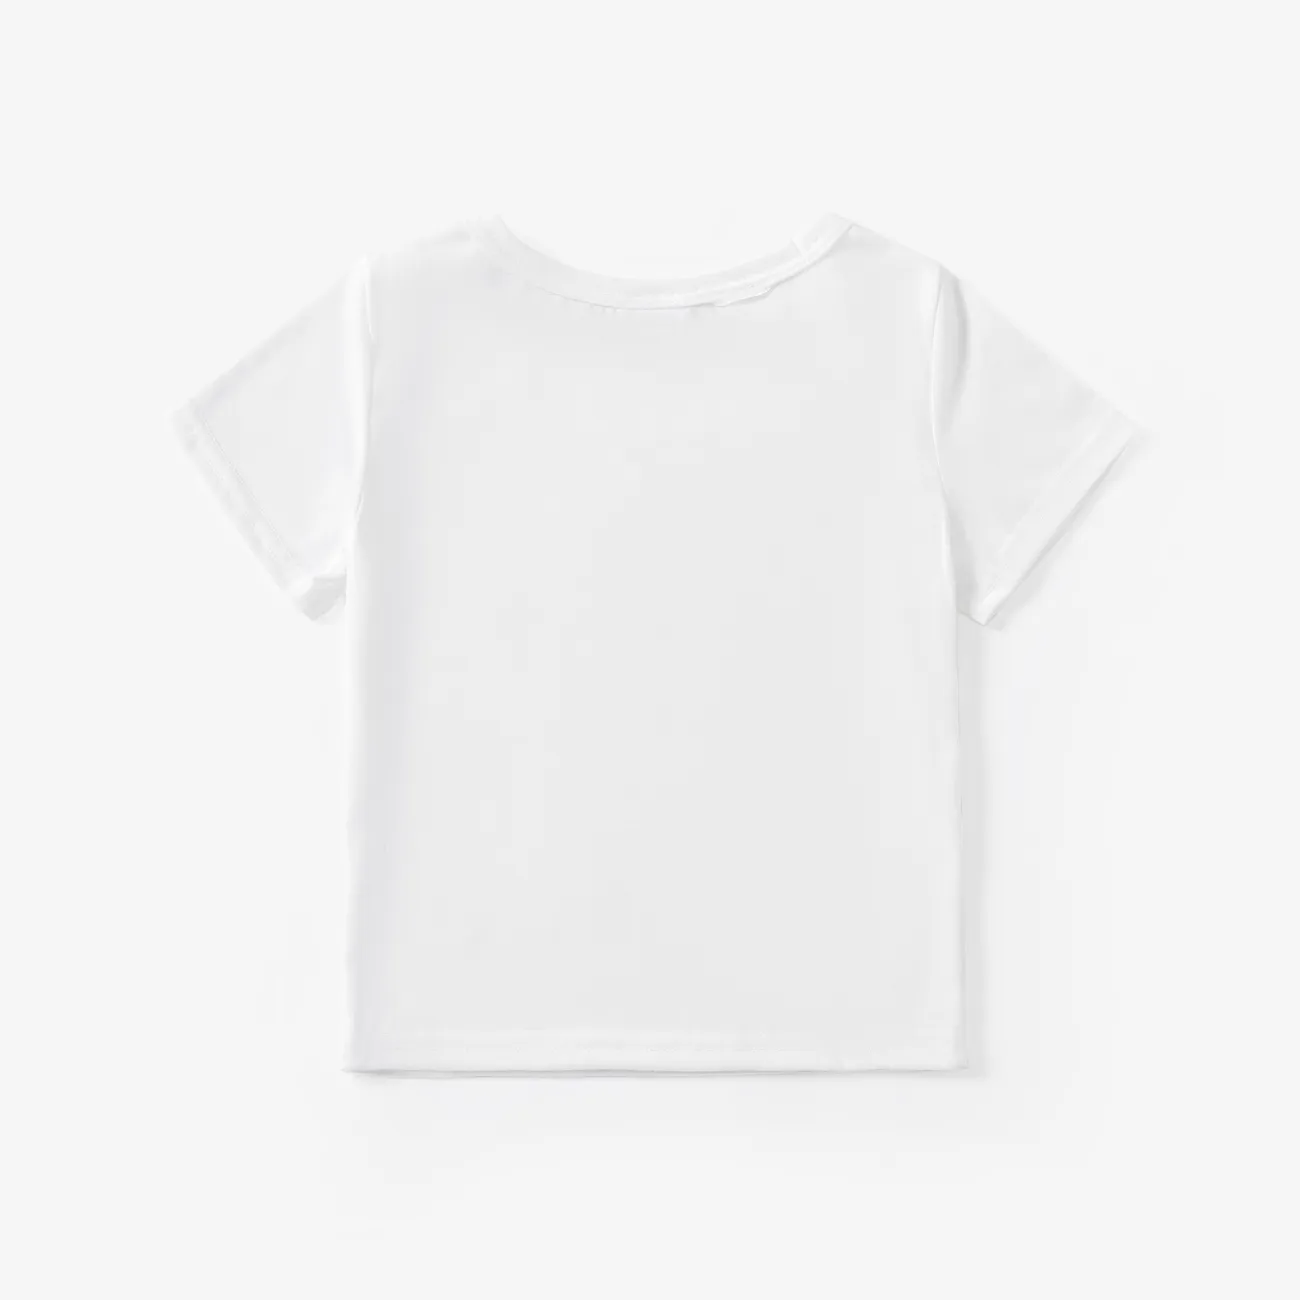 Kleinkinder Jungen Basics Kurzärmelig T-Shirts weiß big image 1